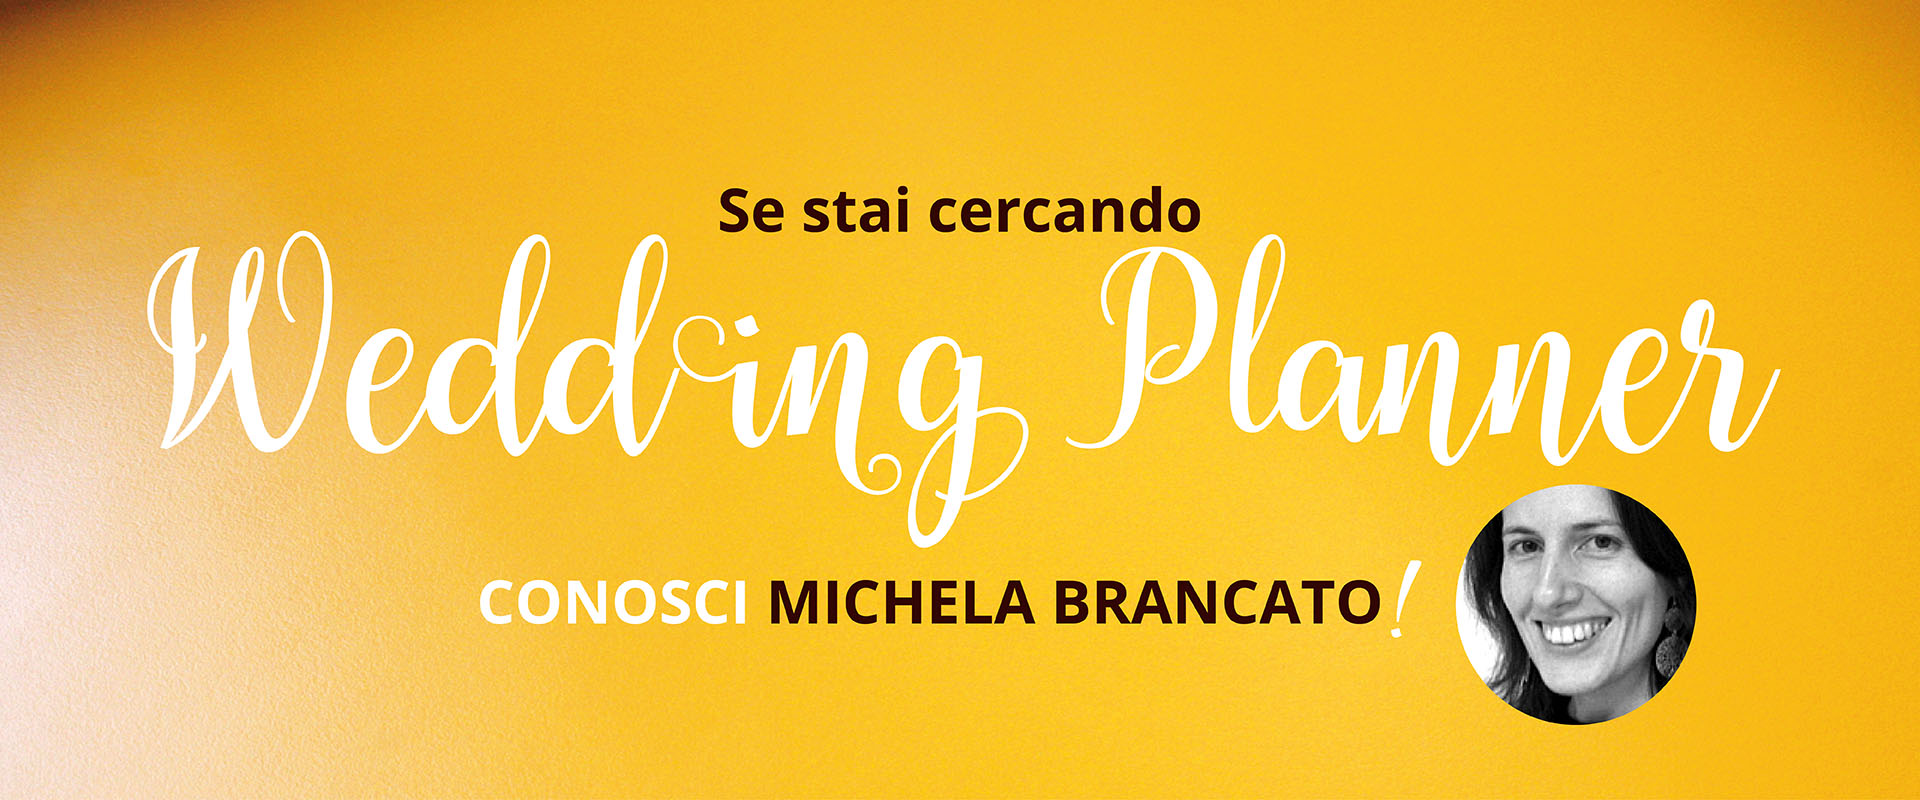 Spazio per me, Michela Brancato, Wedding Planner.